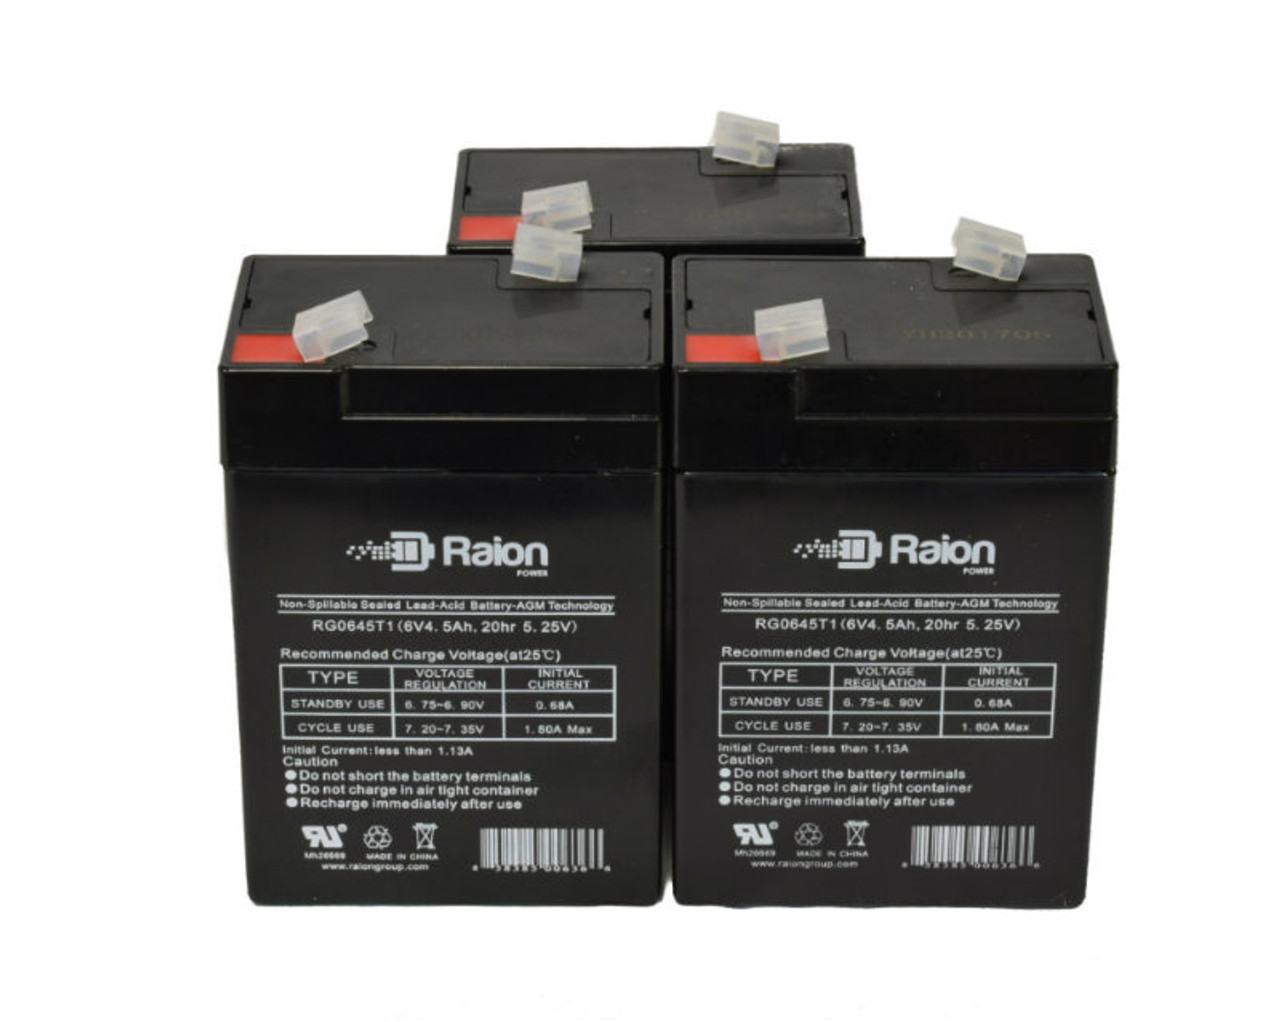 Raion Power 6V 4.5Ah Replacement Emergency Light Battery for Light E8 - 3 Pack